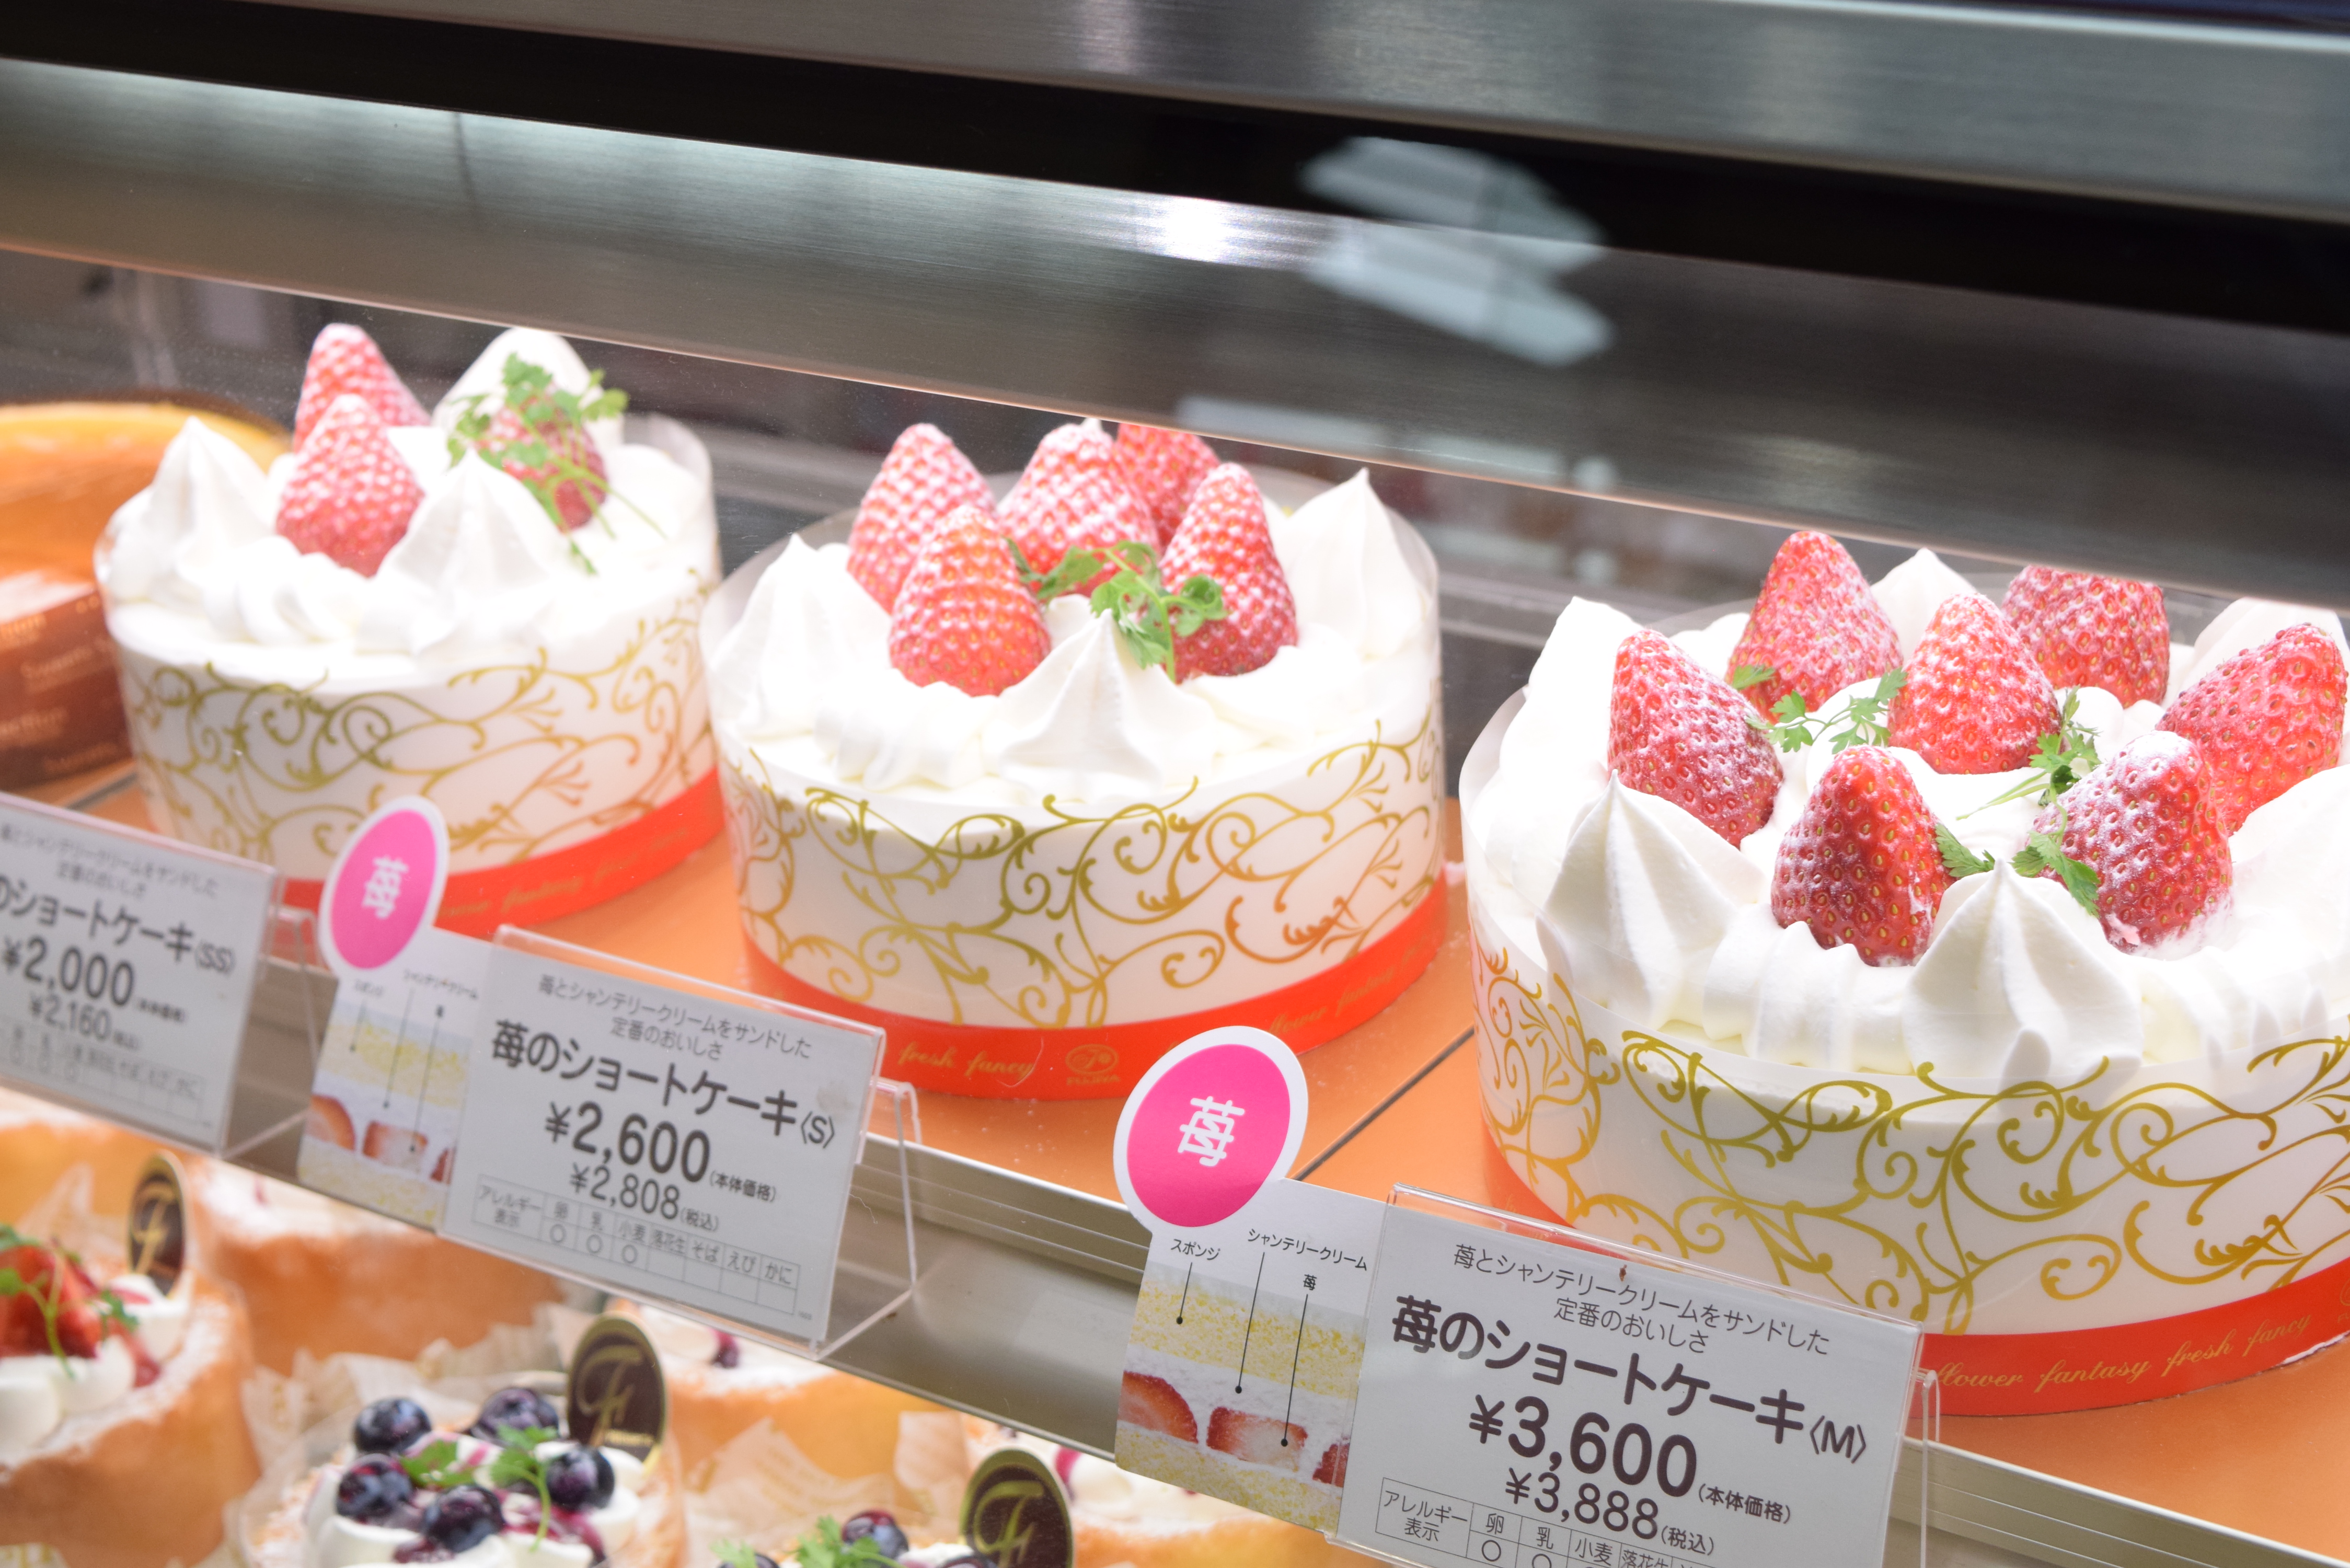 流用する 重くする 疑わしい 不二家 ホール ケーキ 値段 Yyaegaki Jp